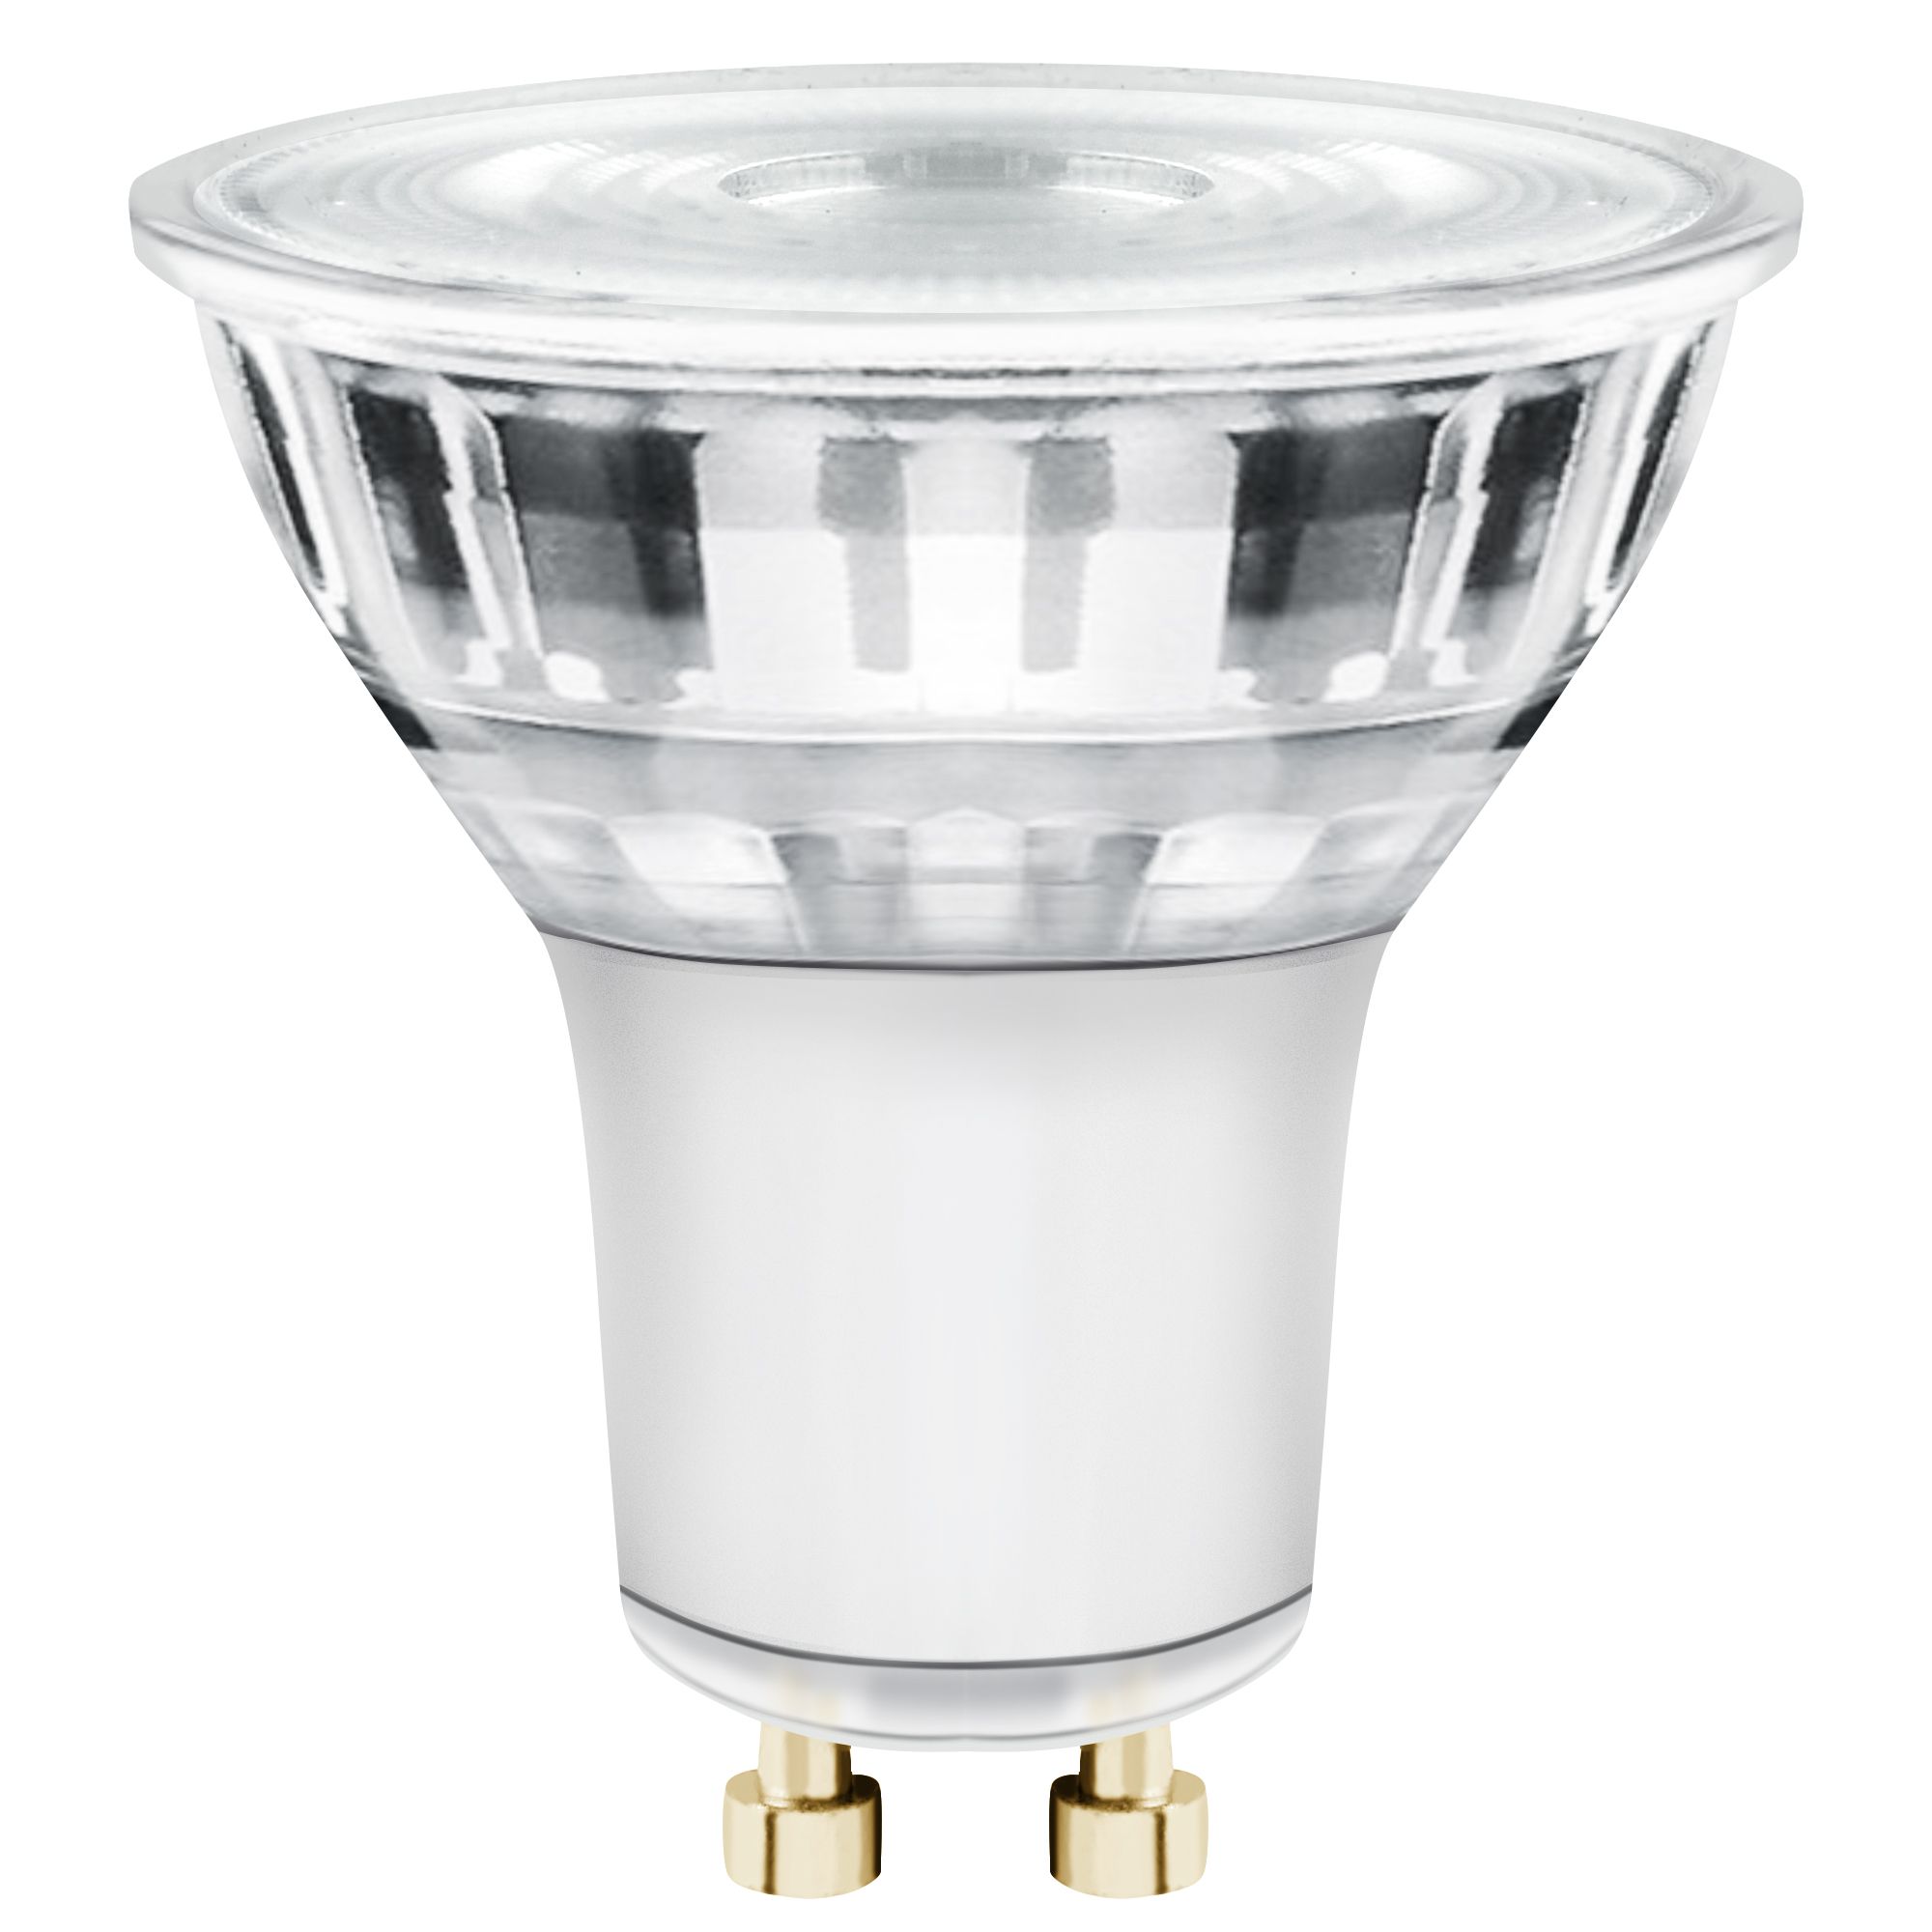 Ledvance Spot LED Air Fix Aluminium Blanc 6W 510lm 36D - 930 Blanc Chaud   Diamètre 68mm - IP65 - Meilleur rendu des couleurs - Dimmable - BudgetLight